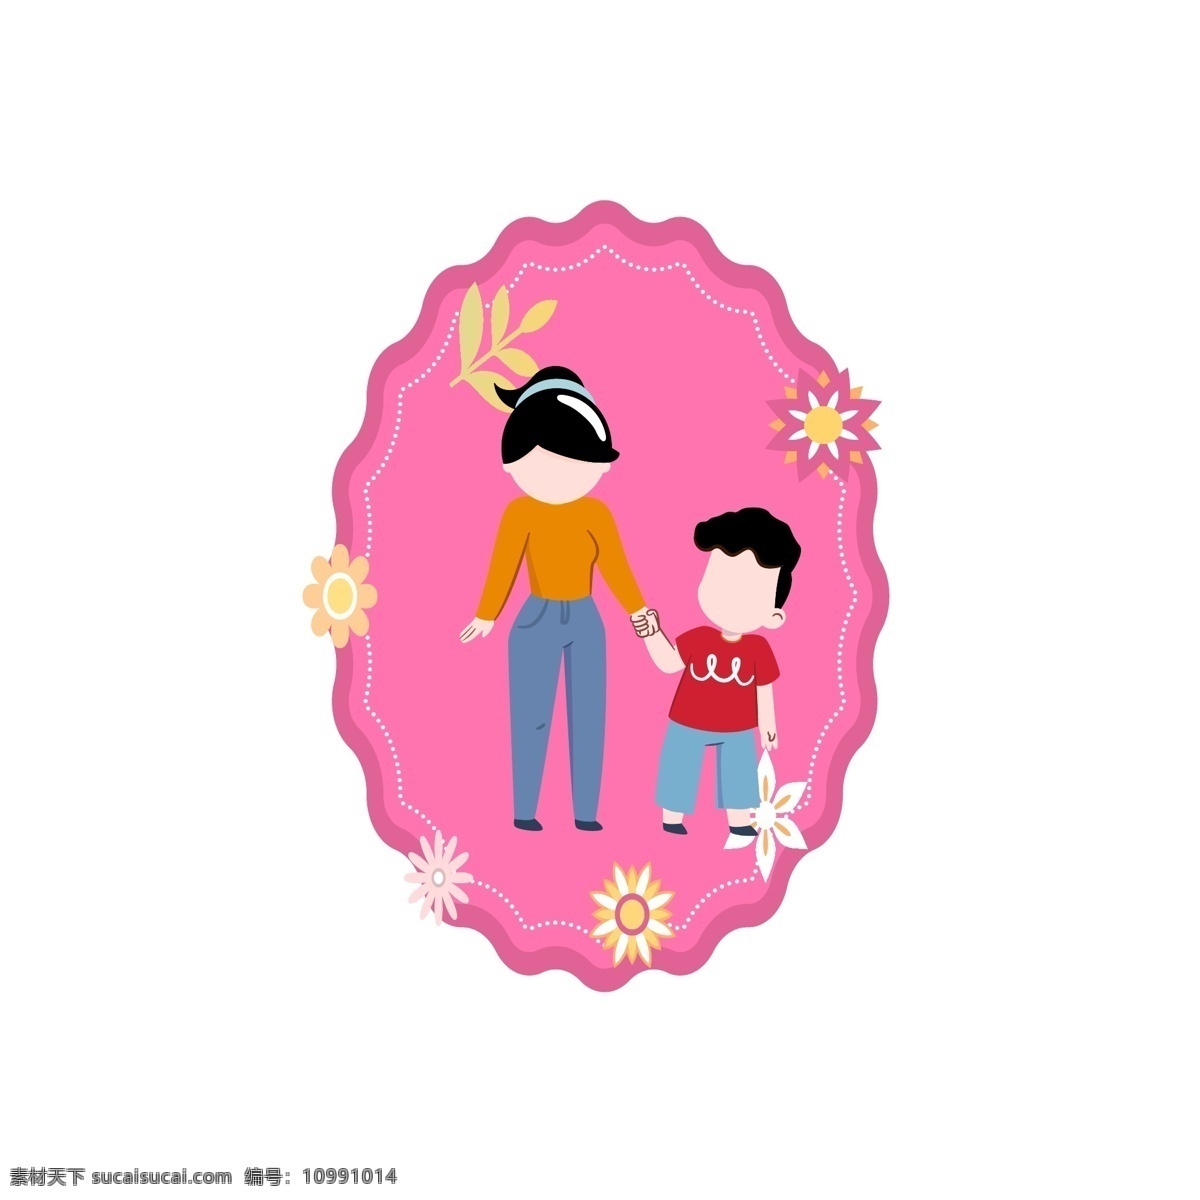 卡 通风 粉红 背景 母亲 儿子 元素 孩子 亲情 母子 人物